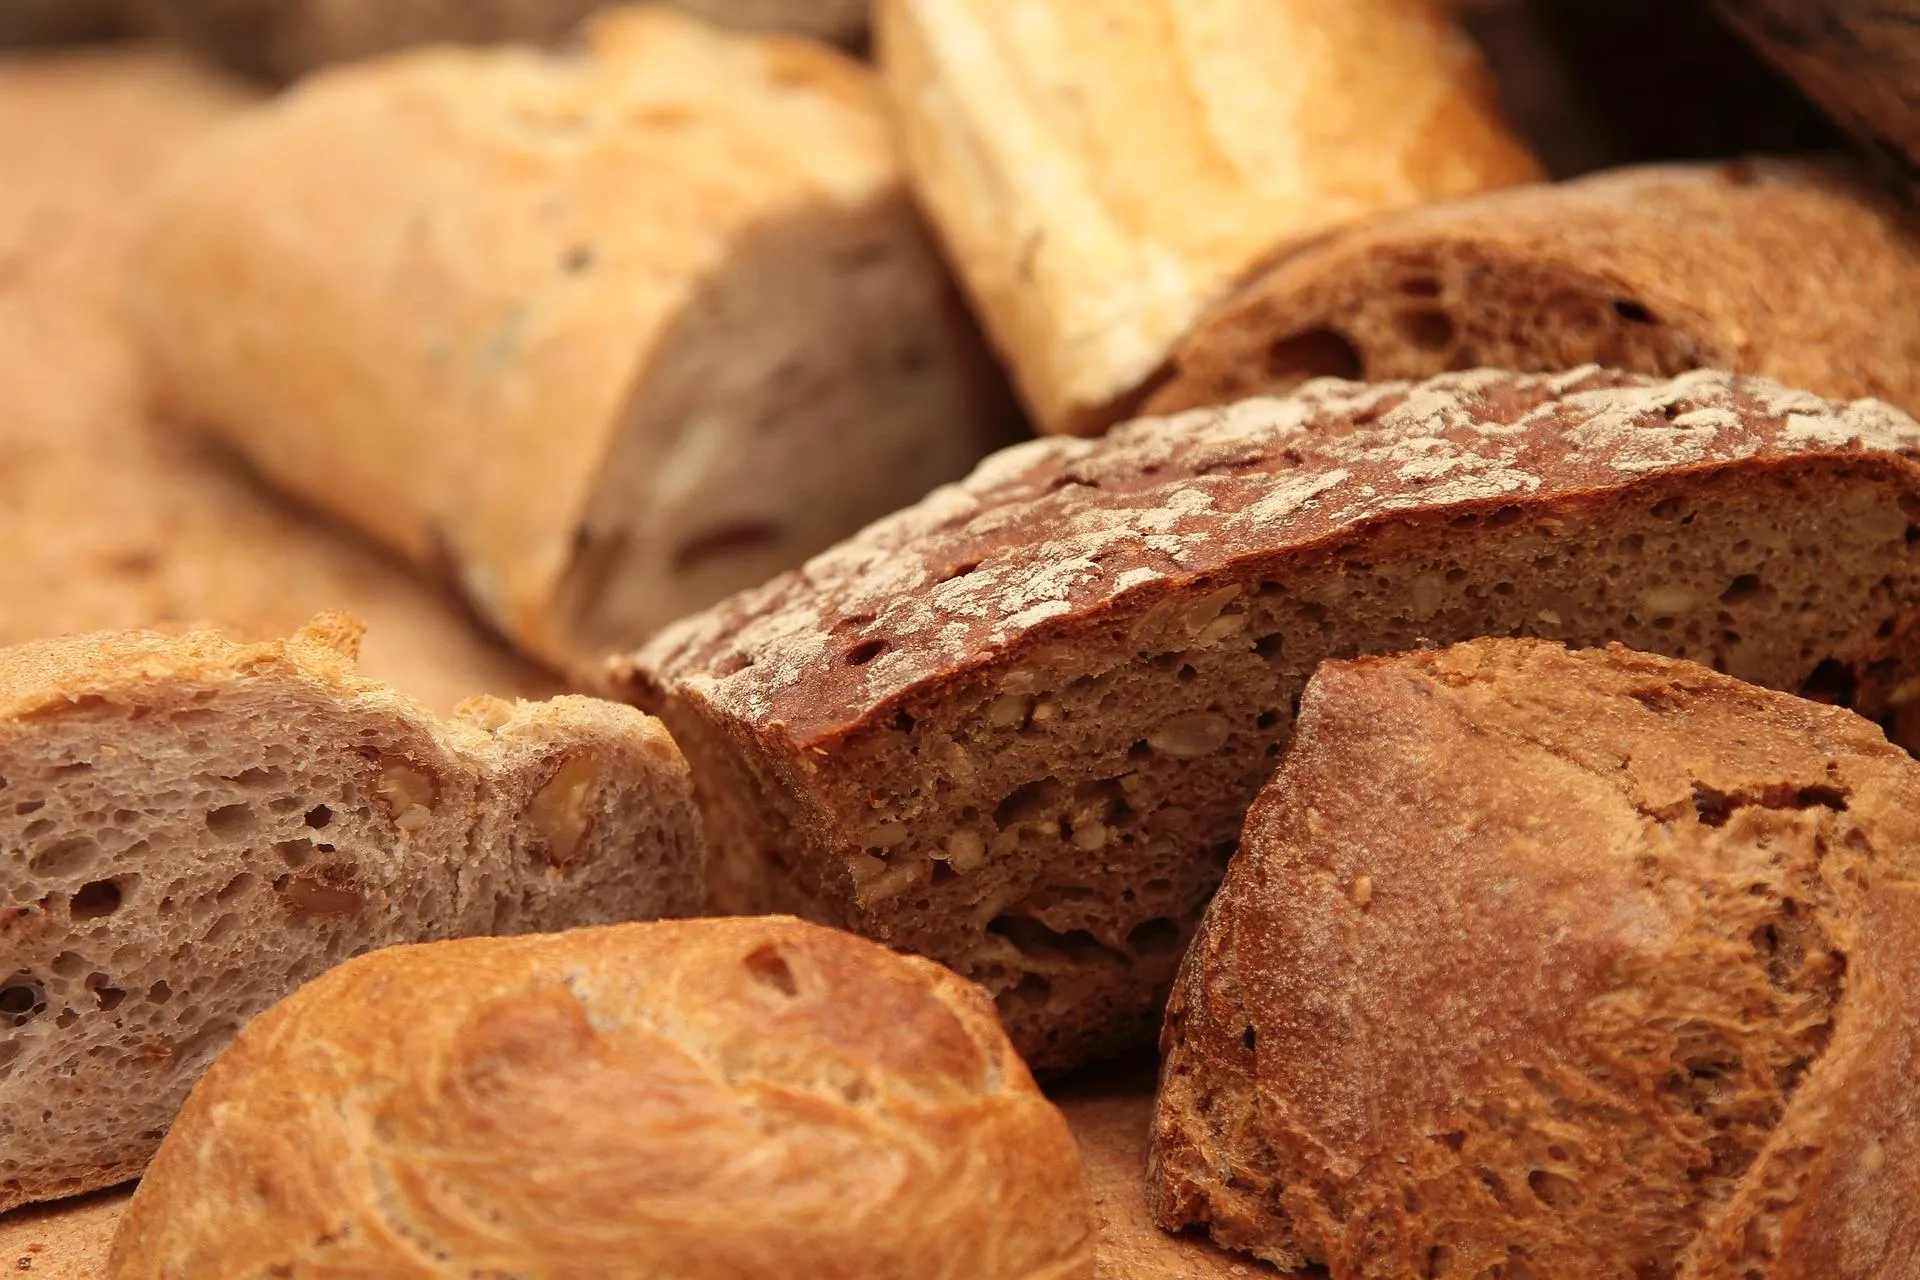 Цілезерновий хліб є корисним для людей 